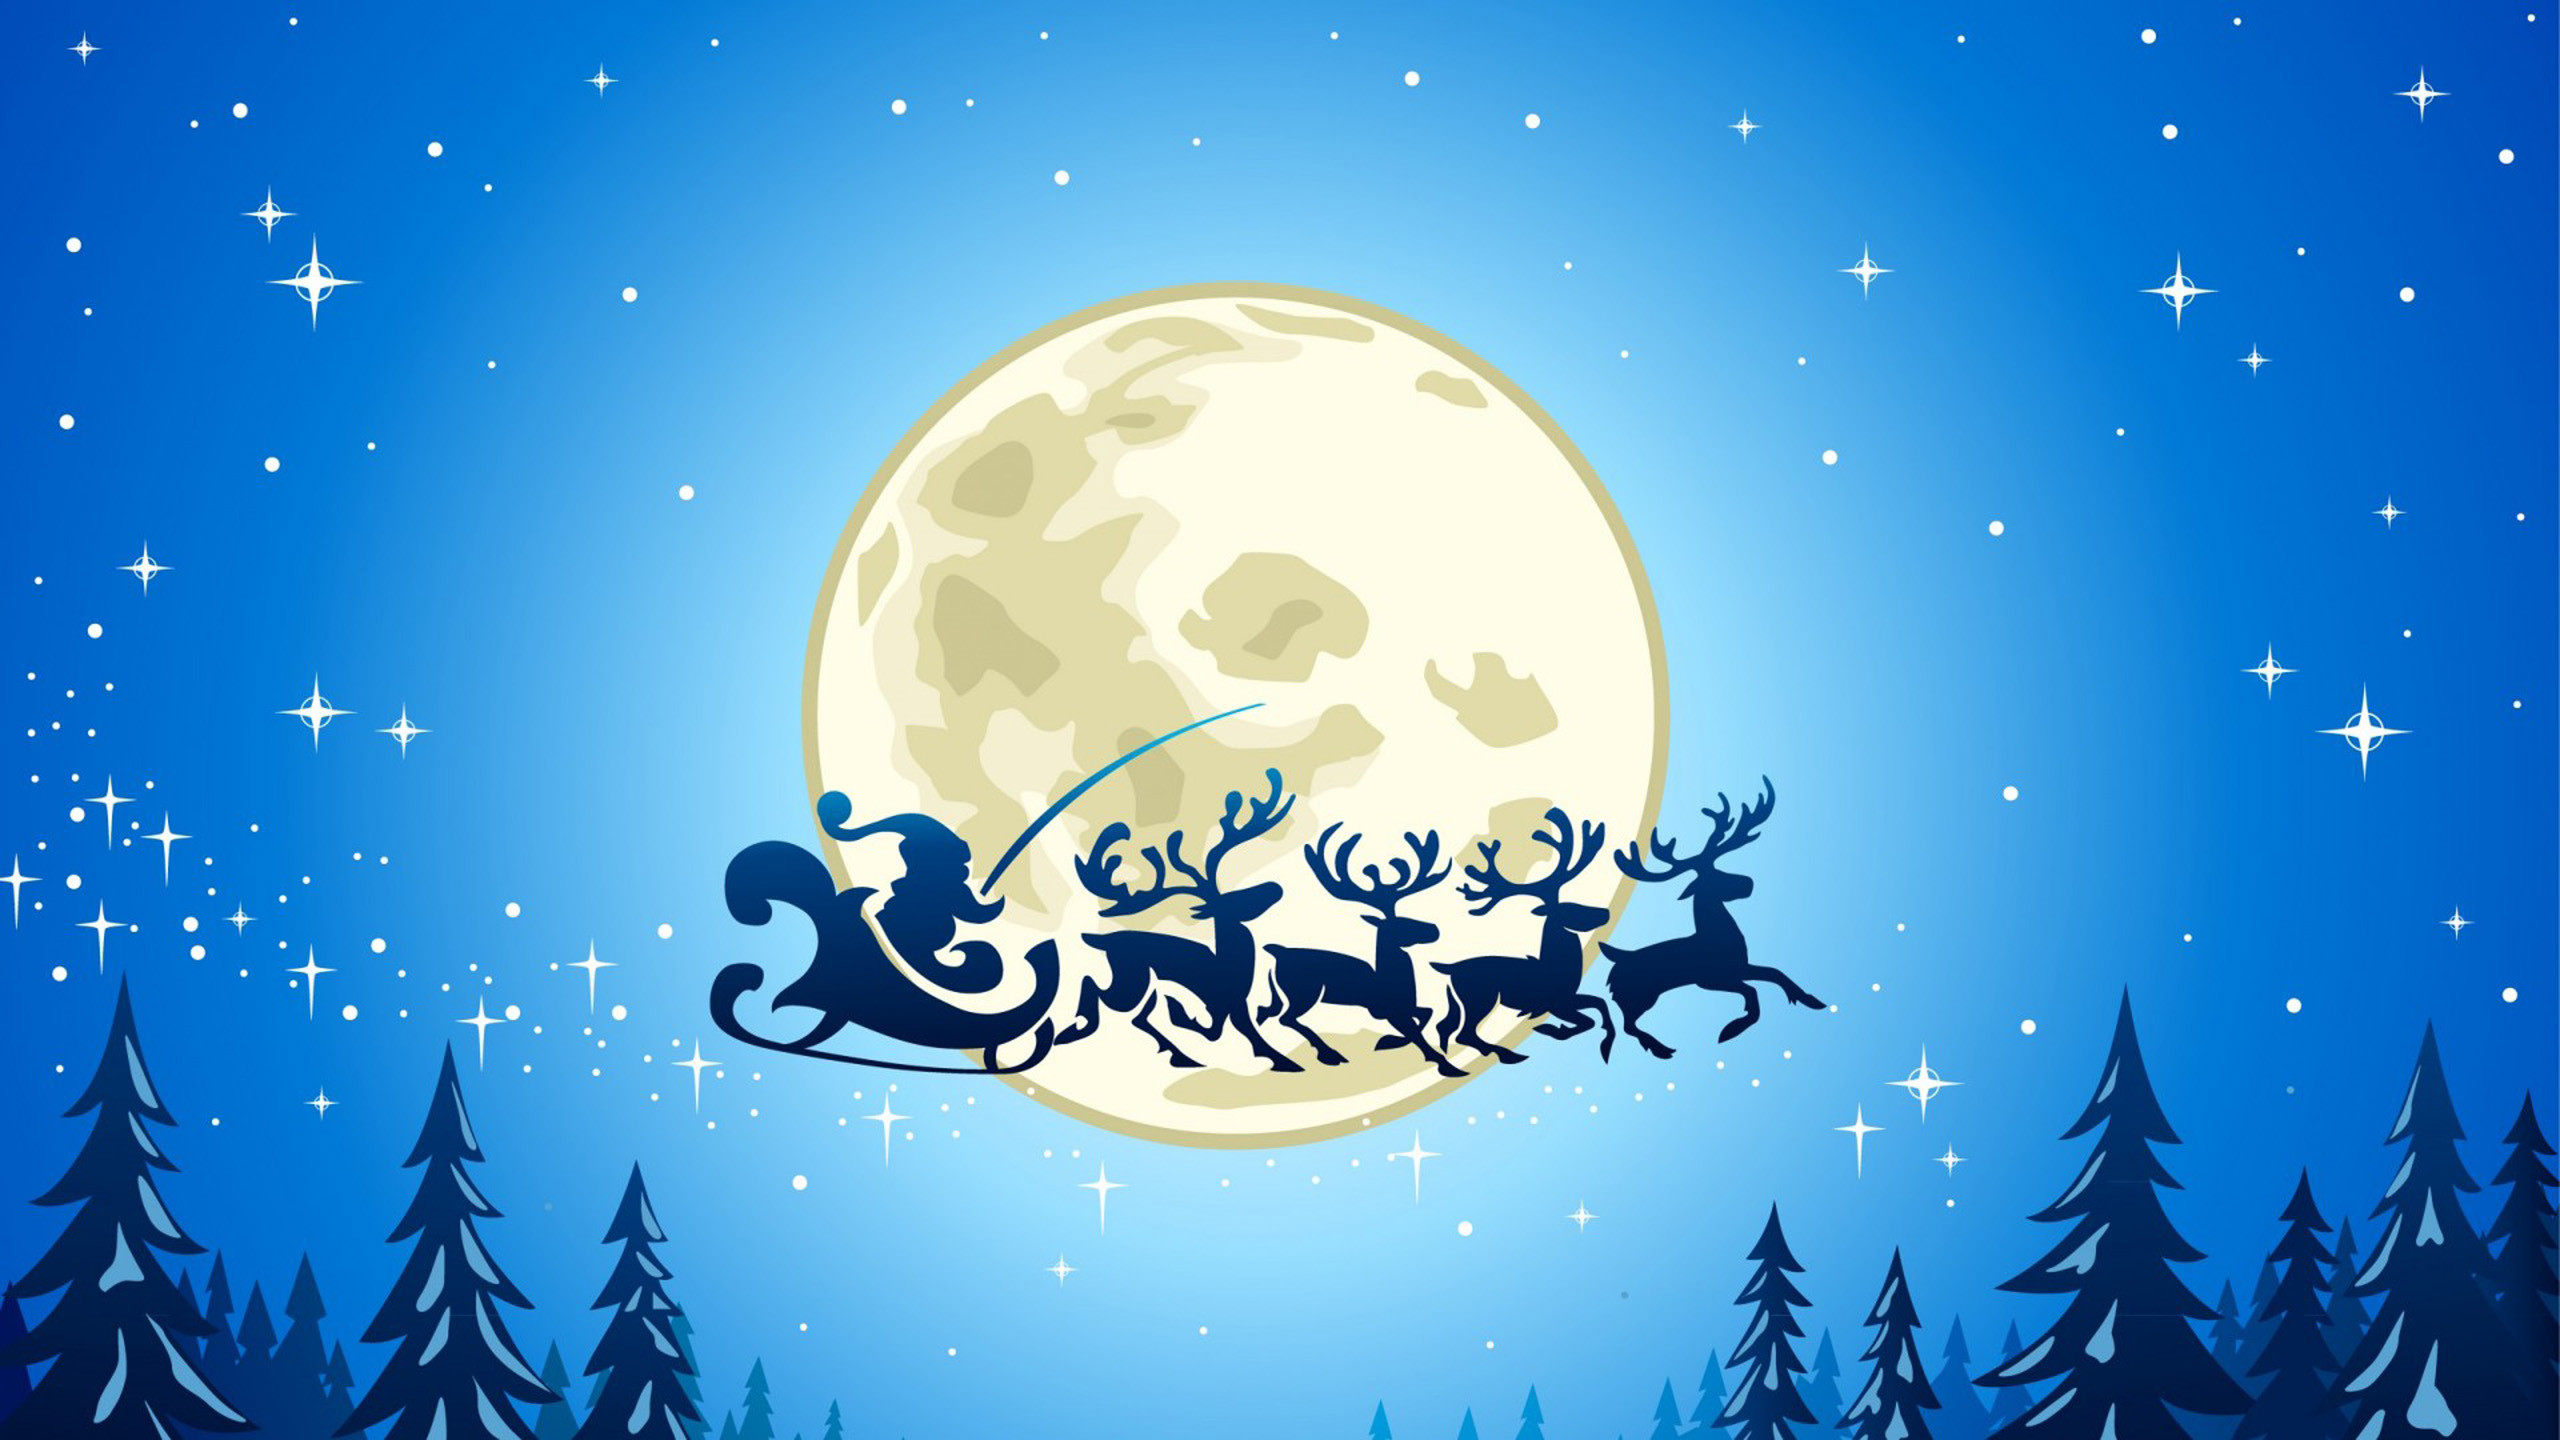 fondo de pantalla de tema de navidad,cielo,nochebuena,ilustración,luna,árbol